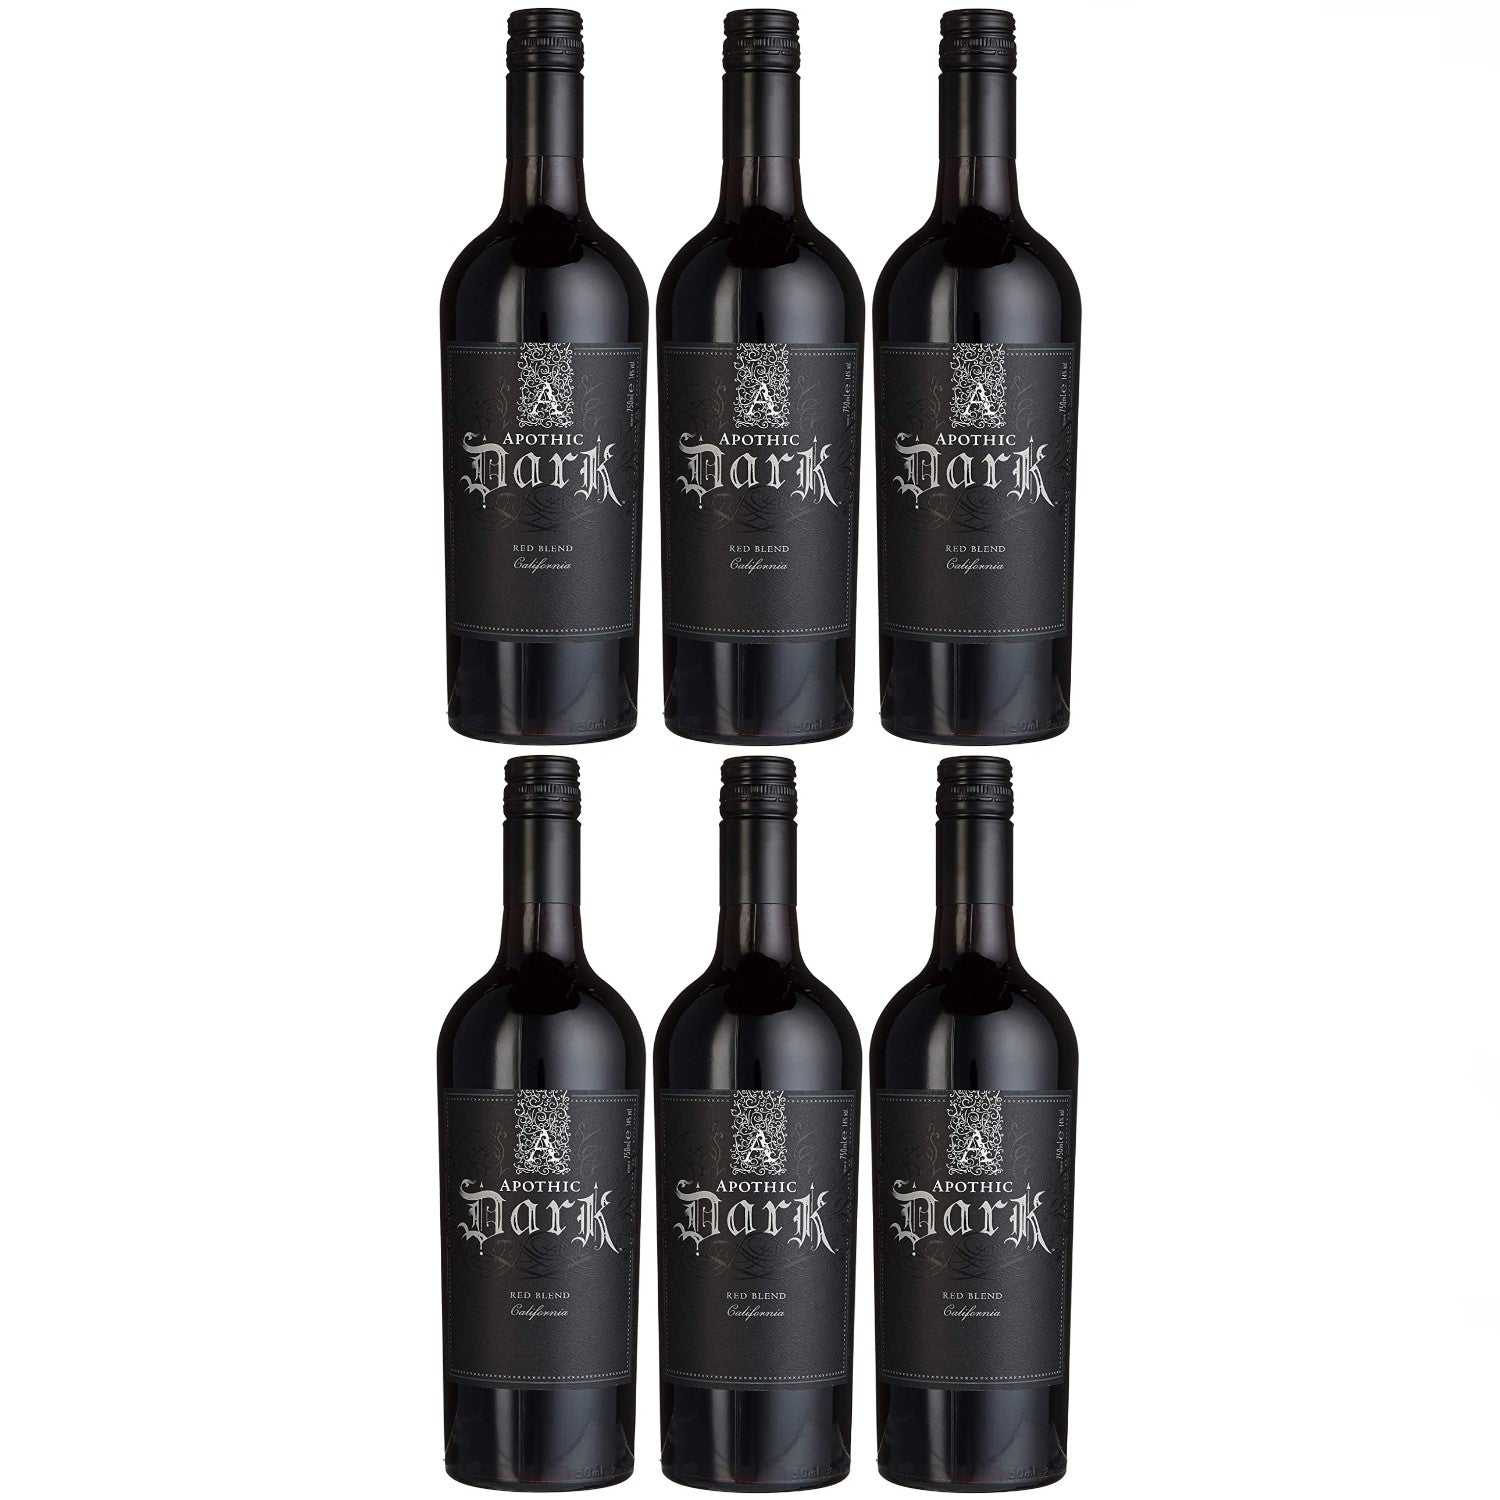 Apothic Dark Rotwein Cuvée 0.75l) Kalifornien – trocken Versanel Wein (6 x